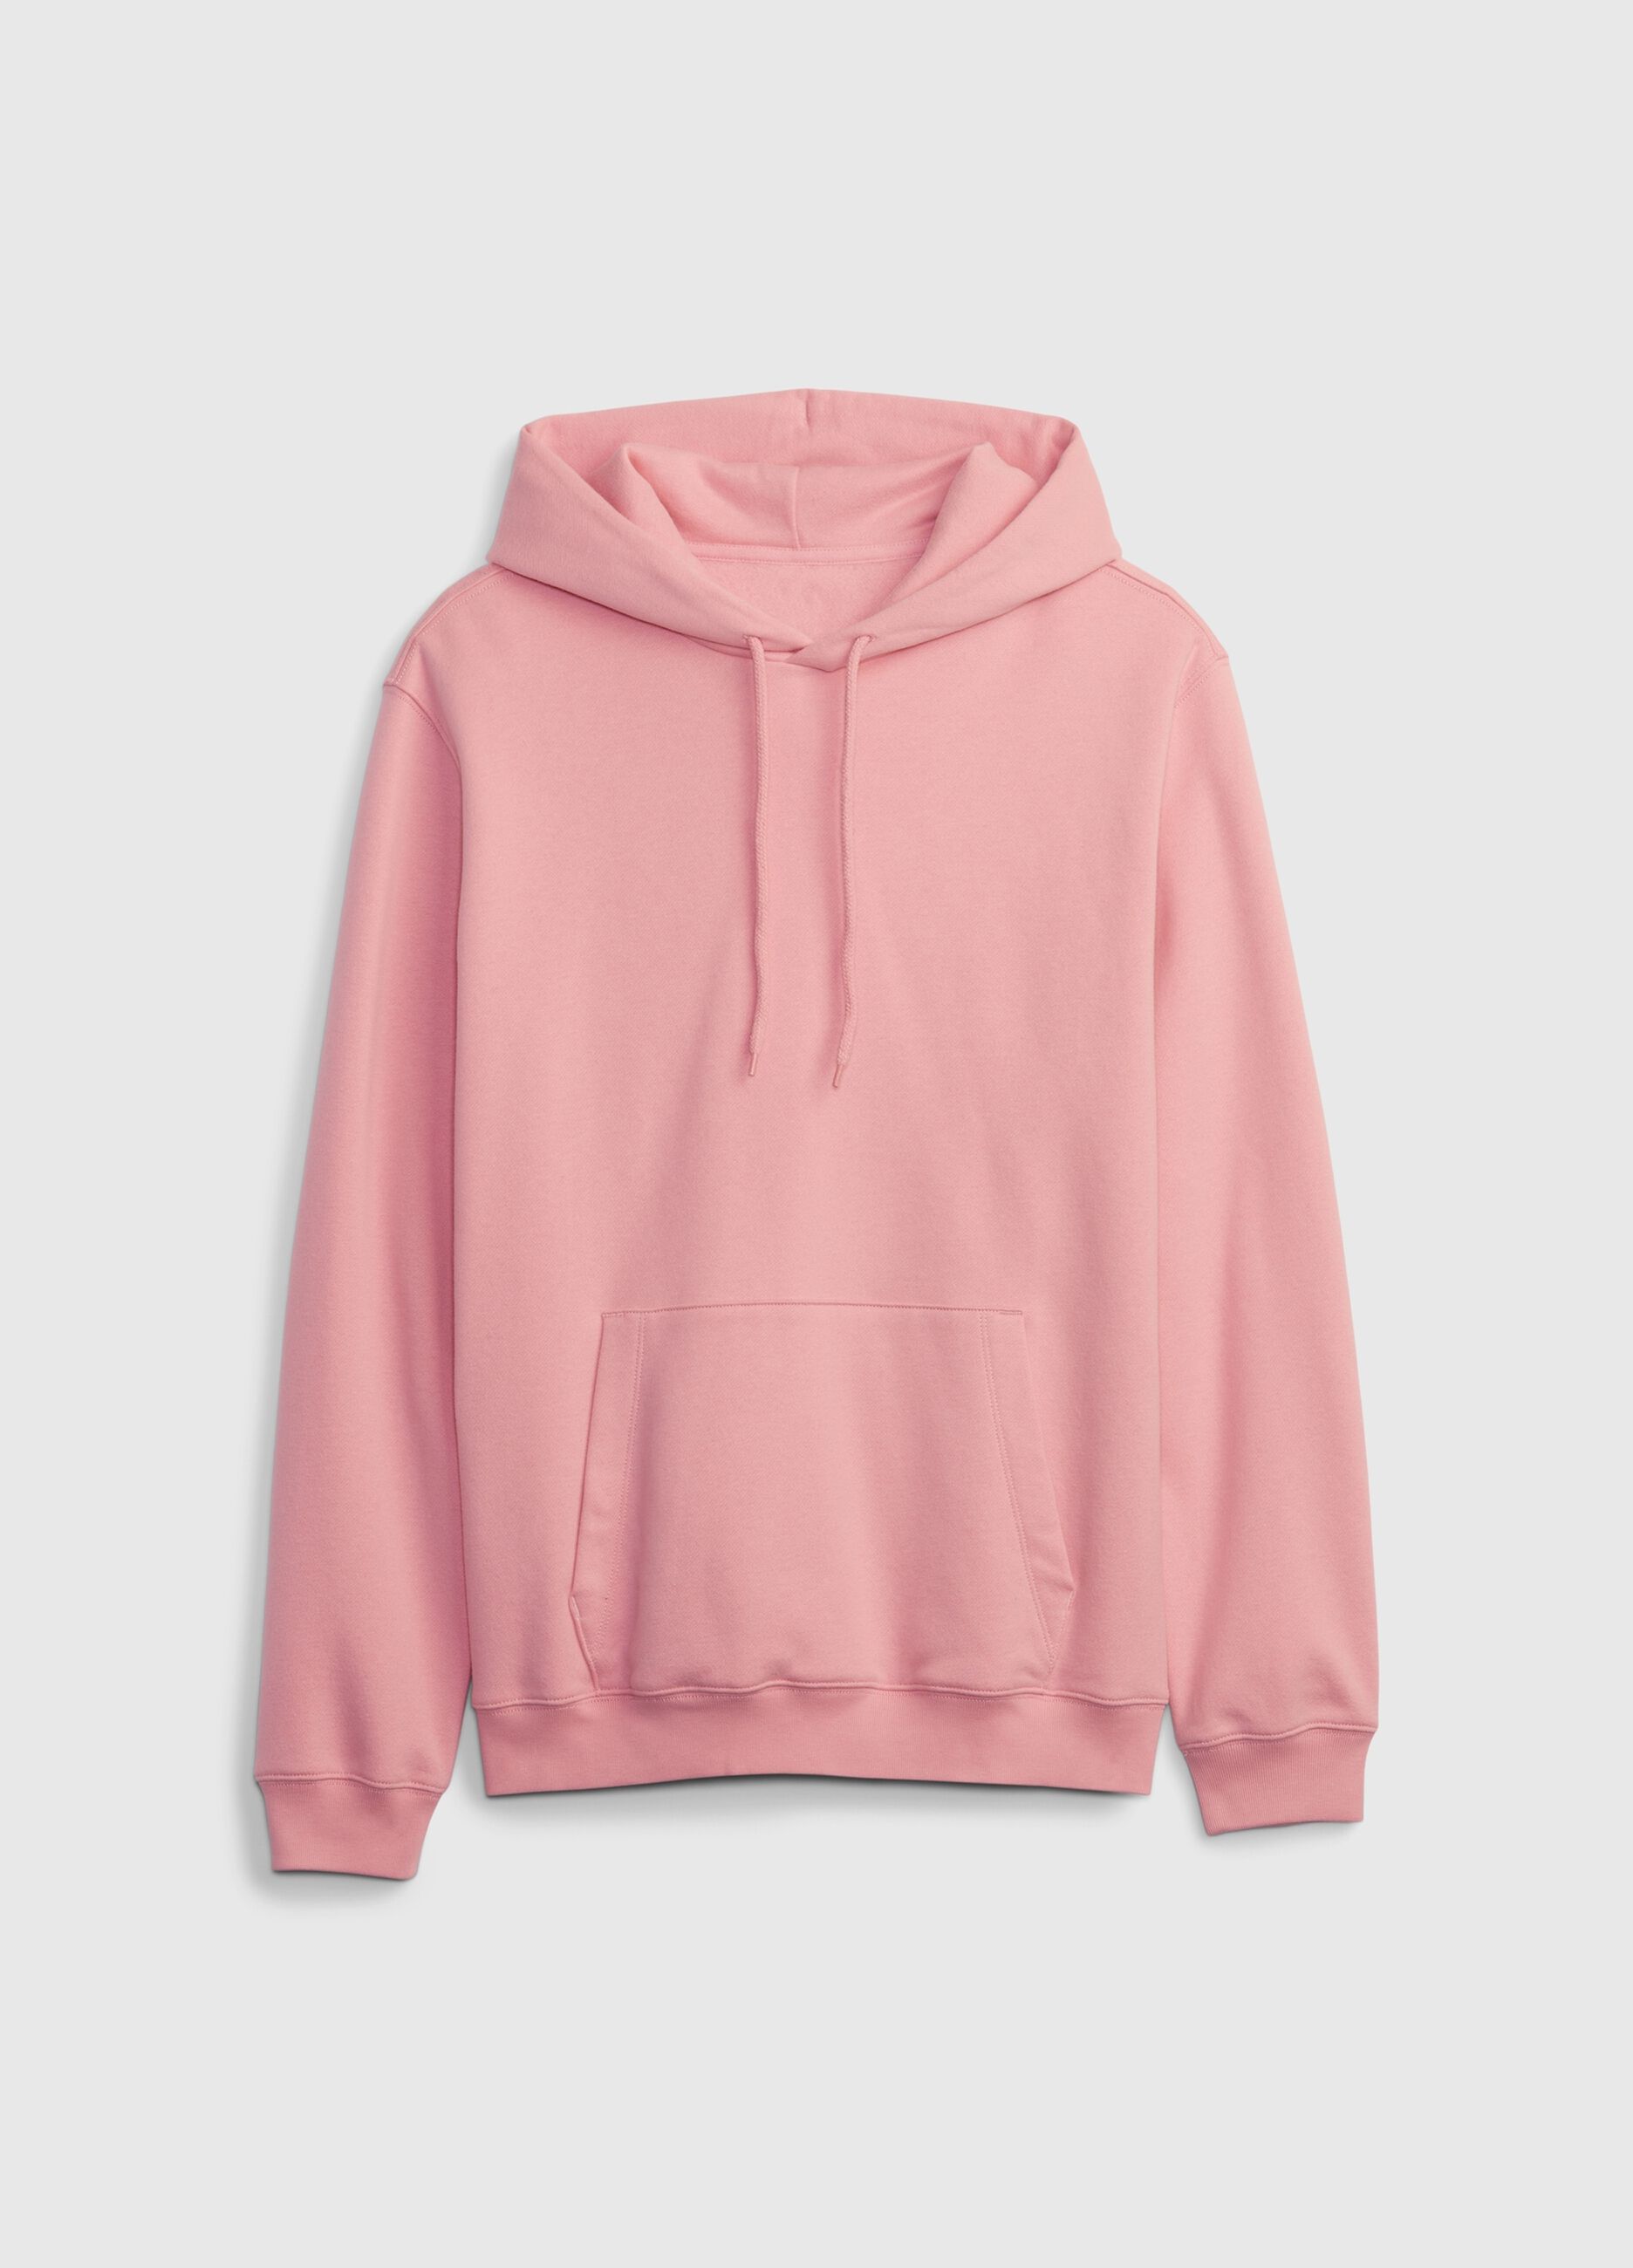 Sweatshirt with hood and pocket